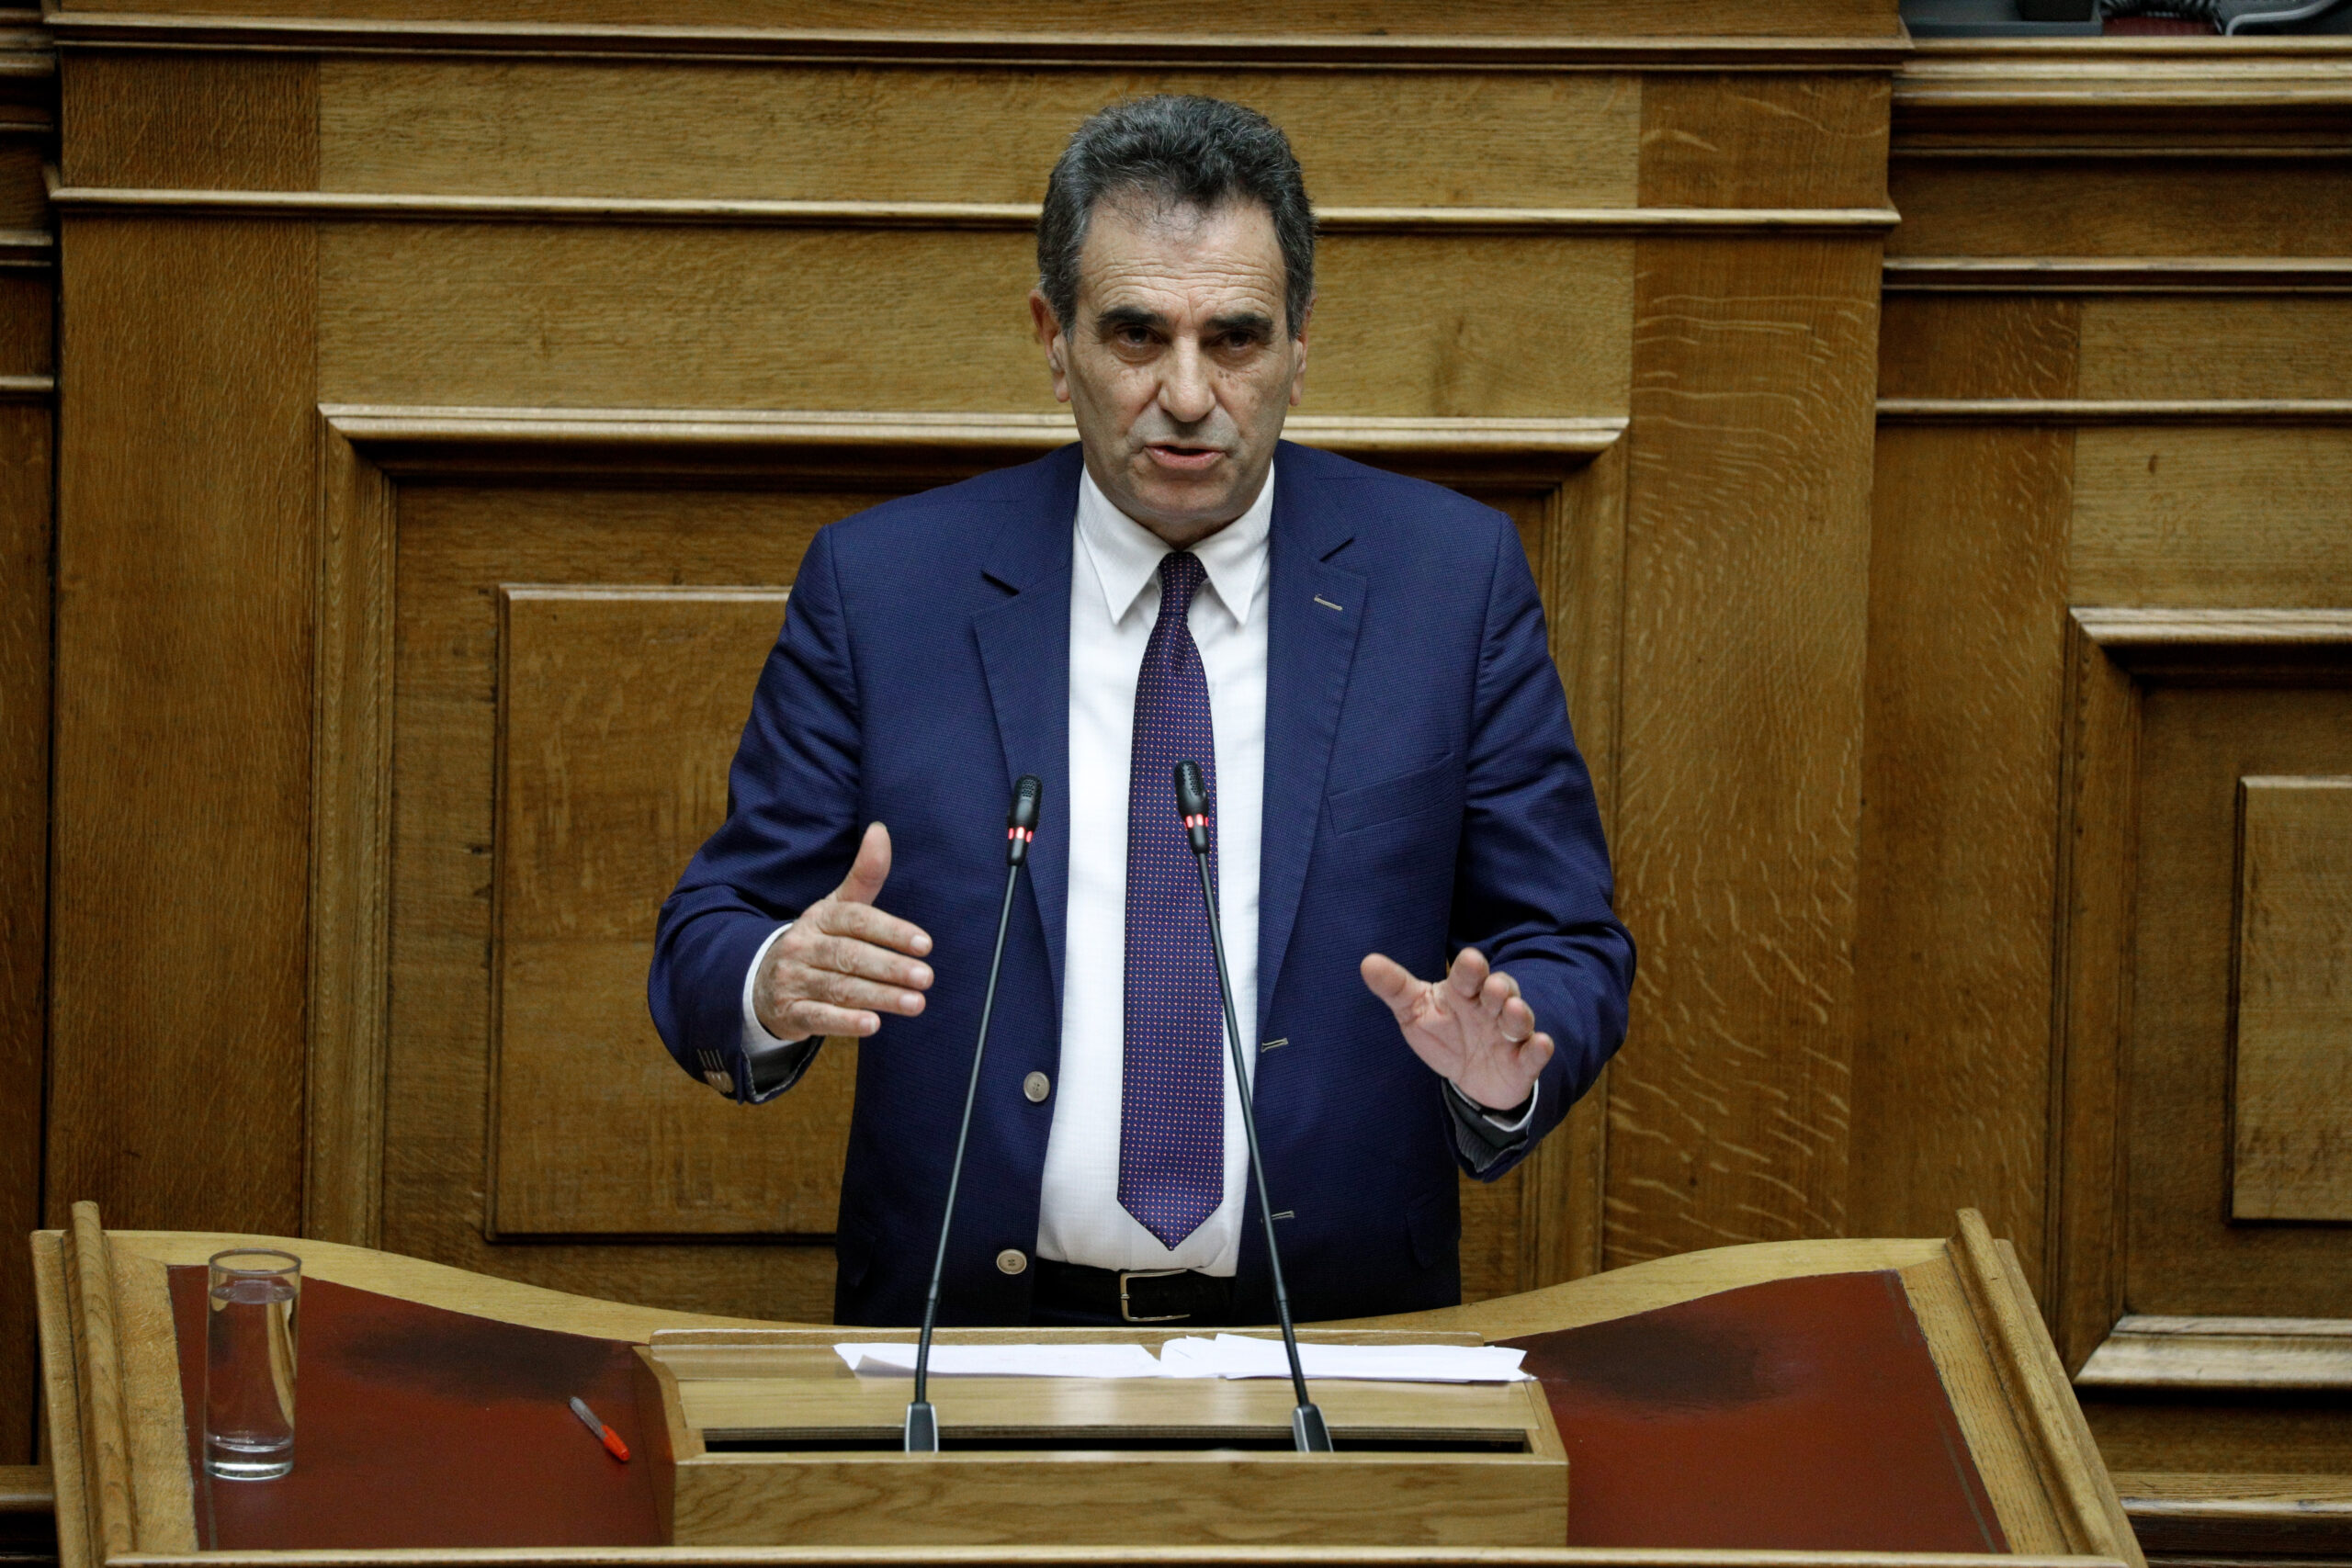 Σέρρες: Ο Θ. Λεονταρίδης (ΝΔ) παίρνει την έδρα του Κ. Καρπουχτσή (ΣΥΡΙΖΑ) – Με τέσσερις βουλευτές η ΝΔ στον Νομό